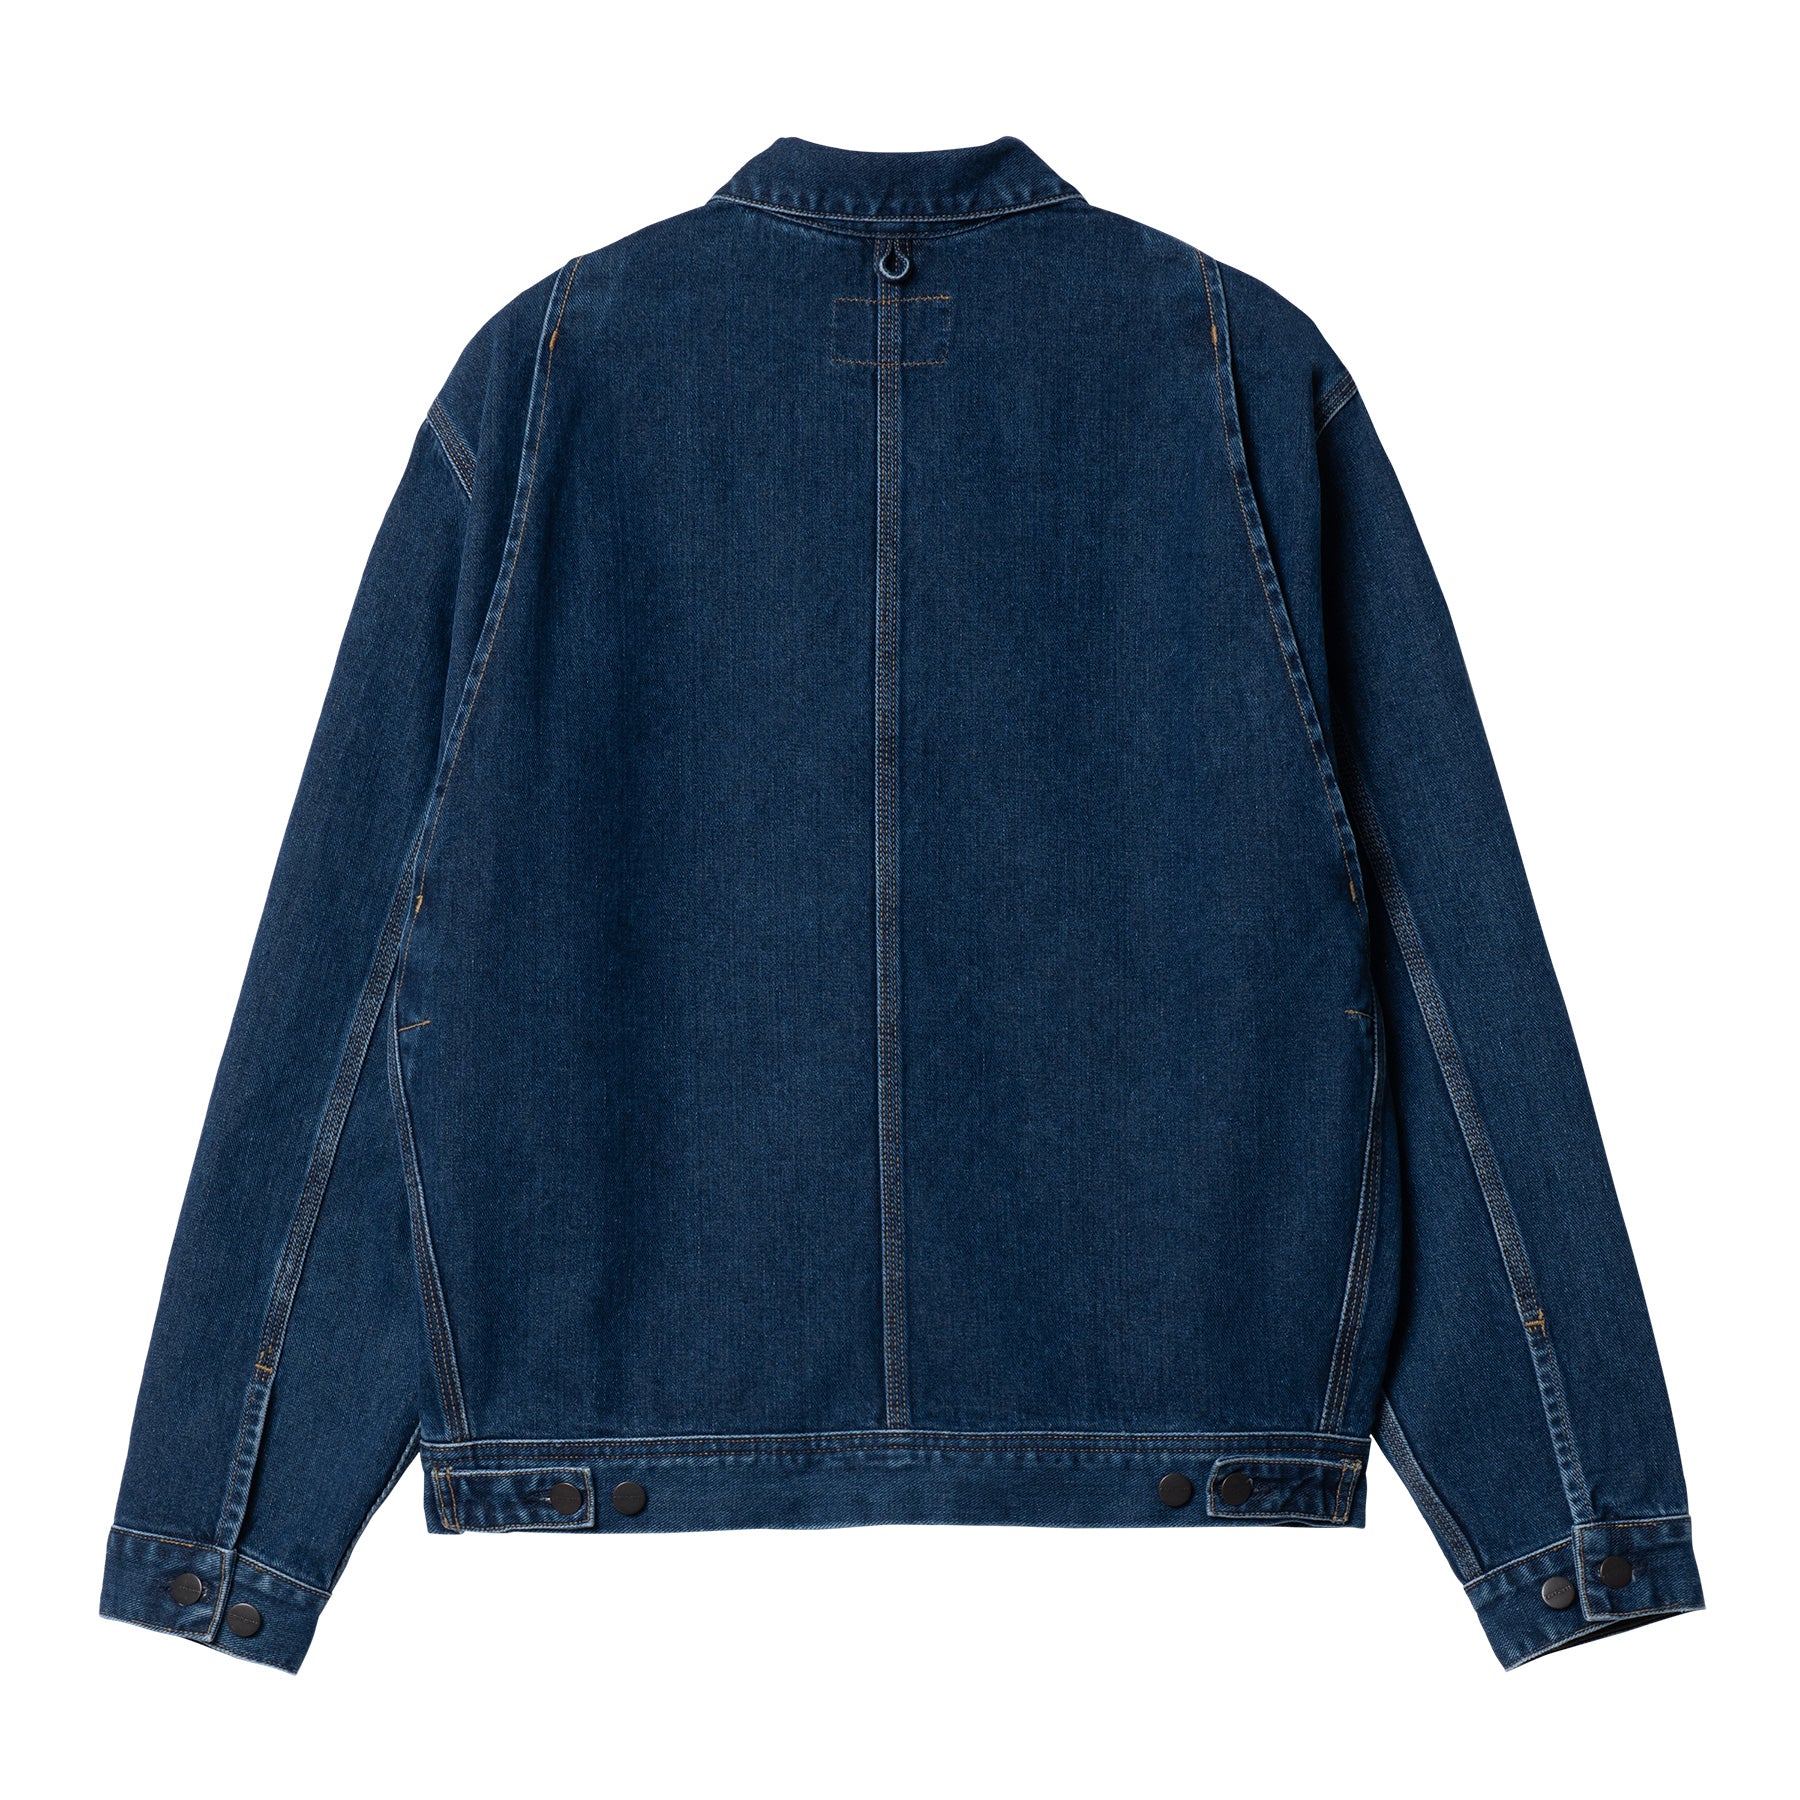 Carhartt WIP Saledo Jacket - Blue Stone Washed